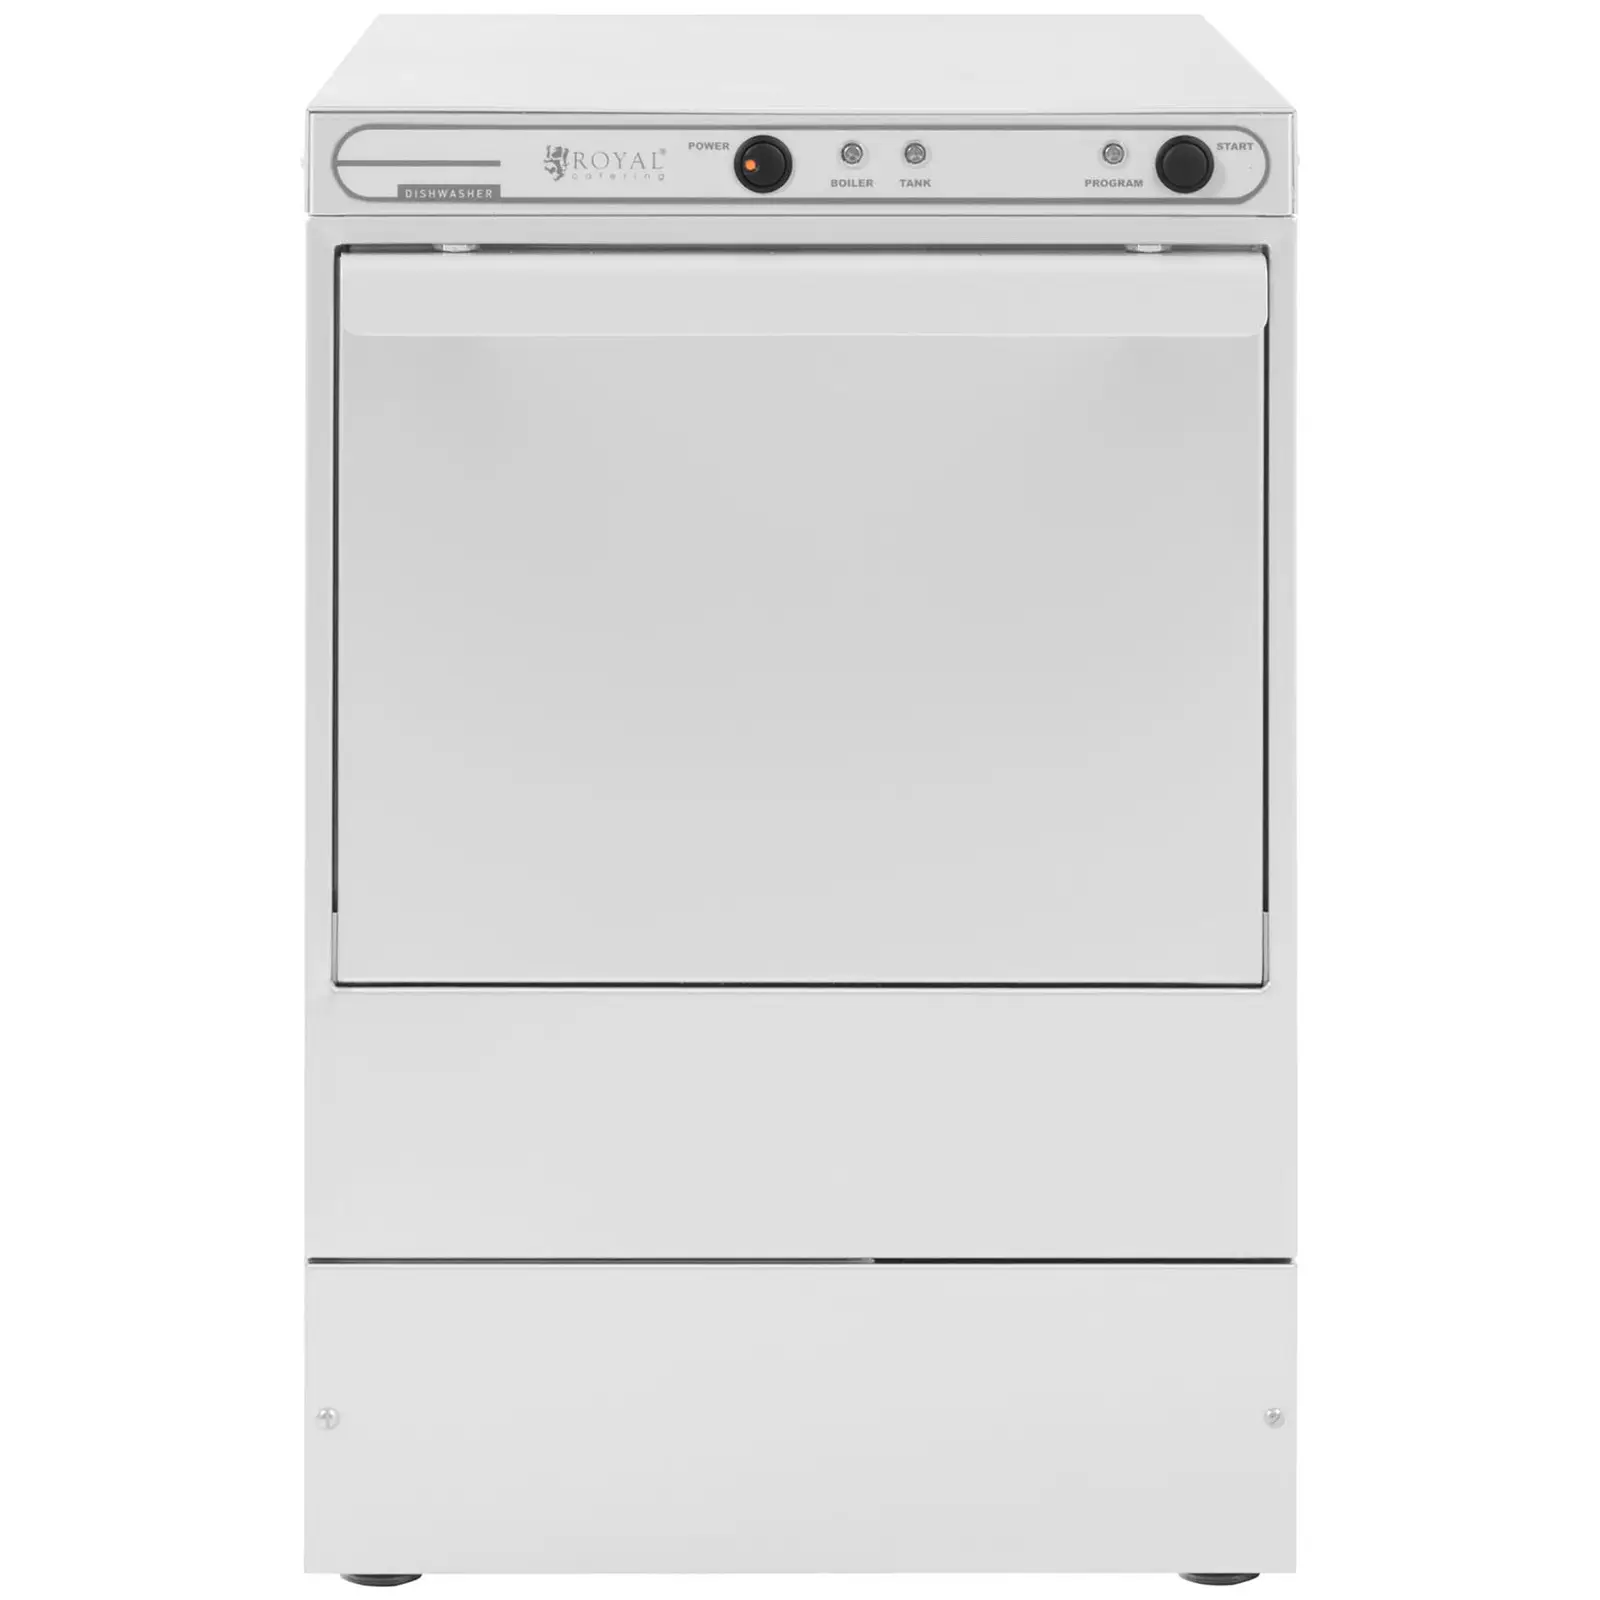 Máquina de lavar louça de vidro - 40 x 40 cm - Royal Catering - lava-louças independente